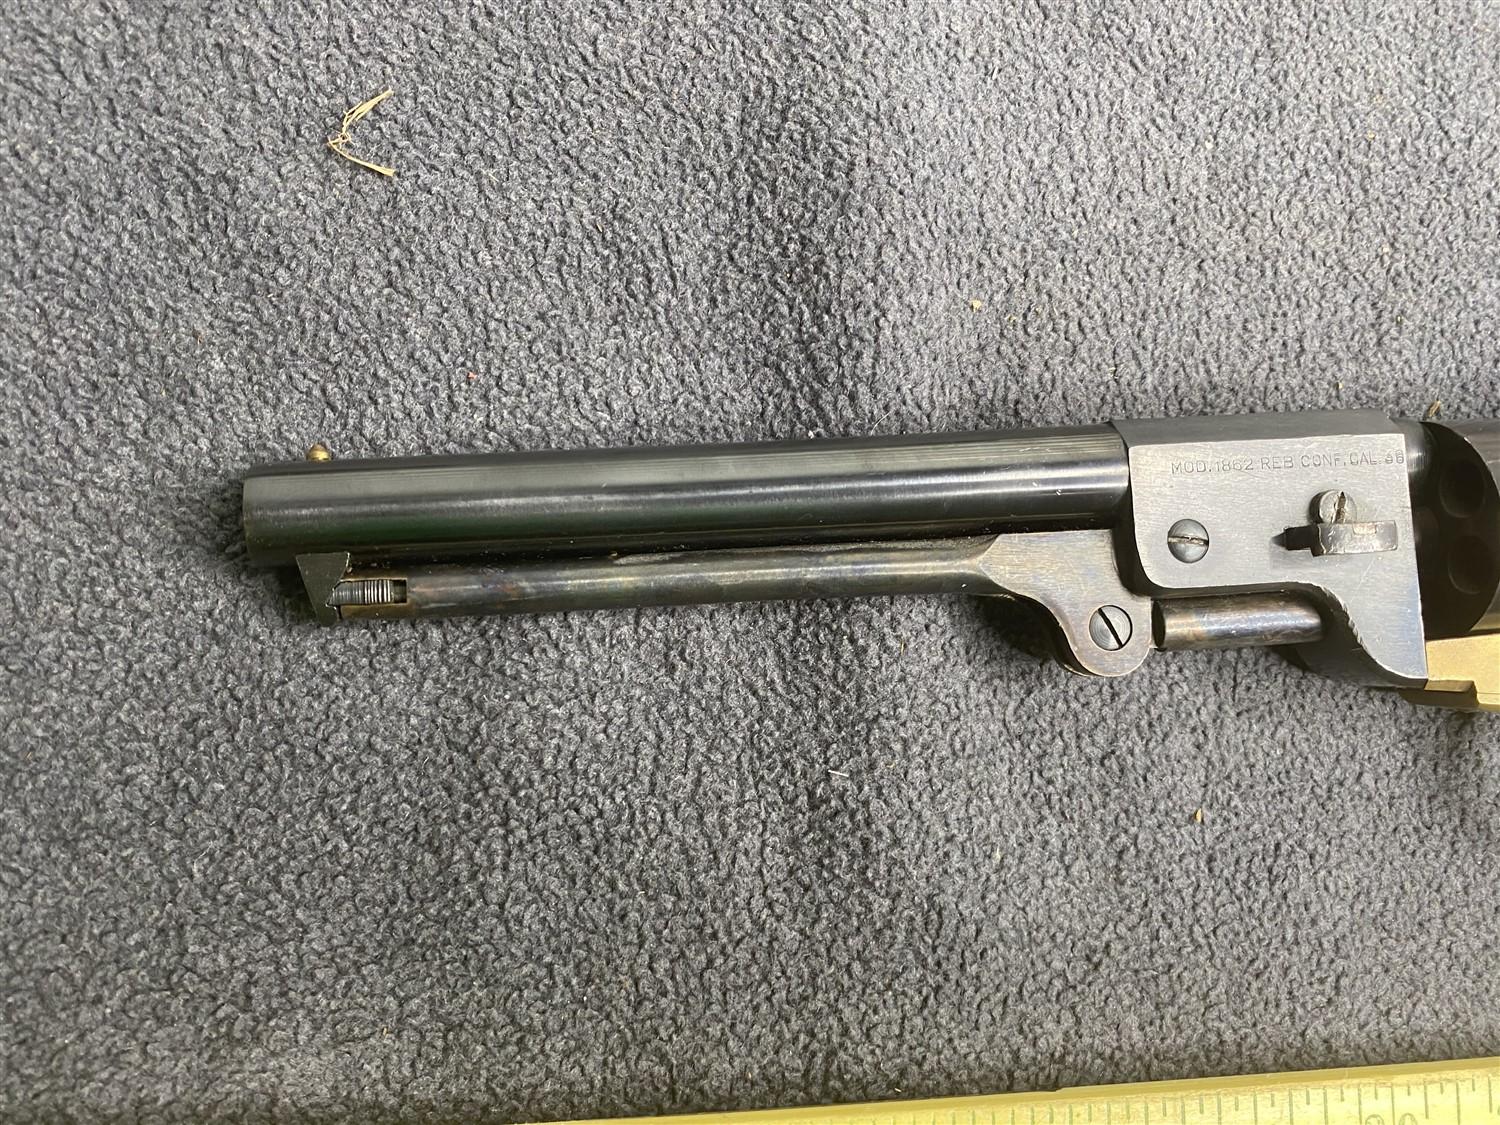 Vintage black powder Colt Navy Style Revolver Pistol